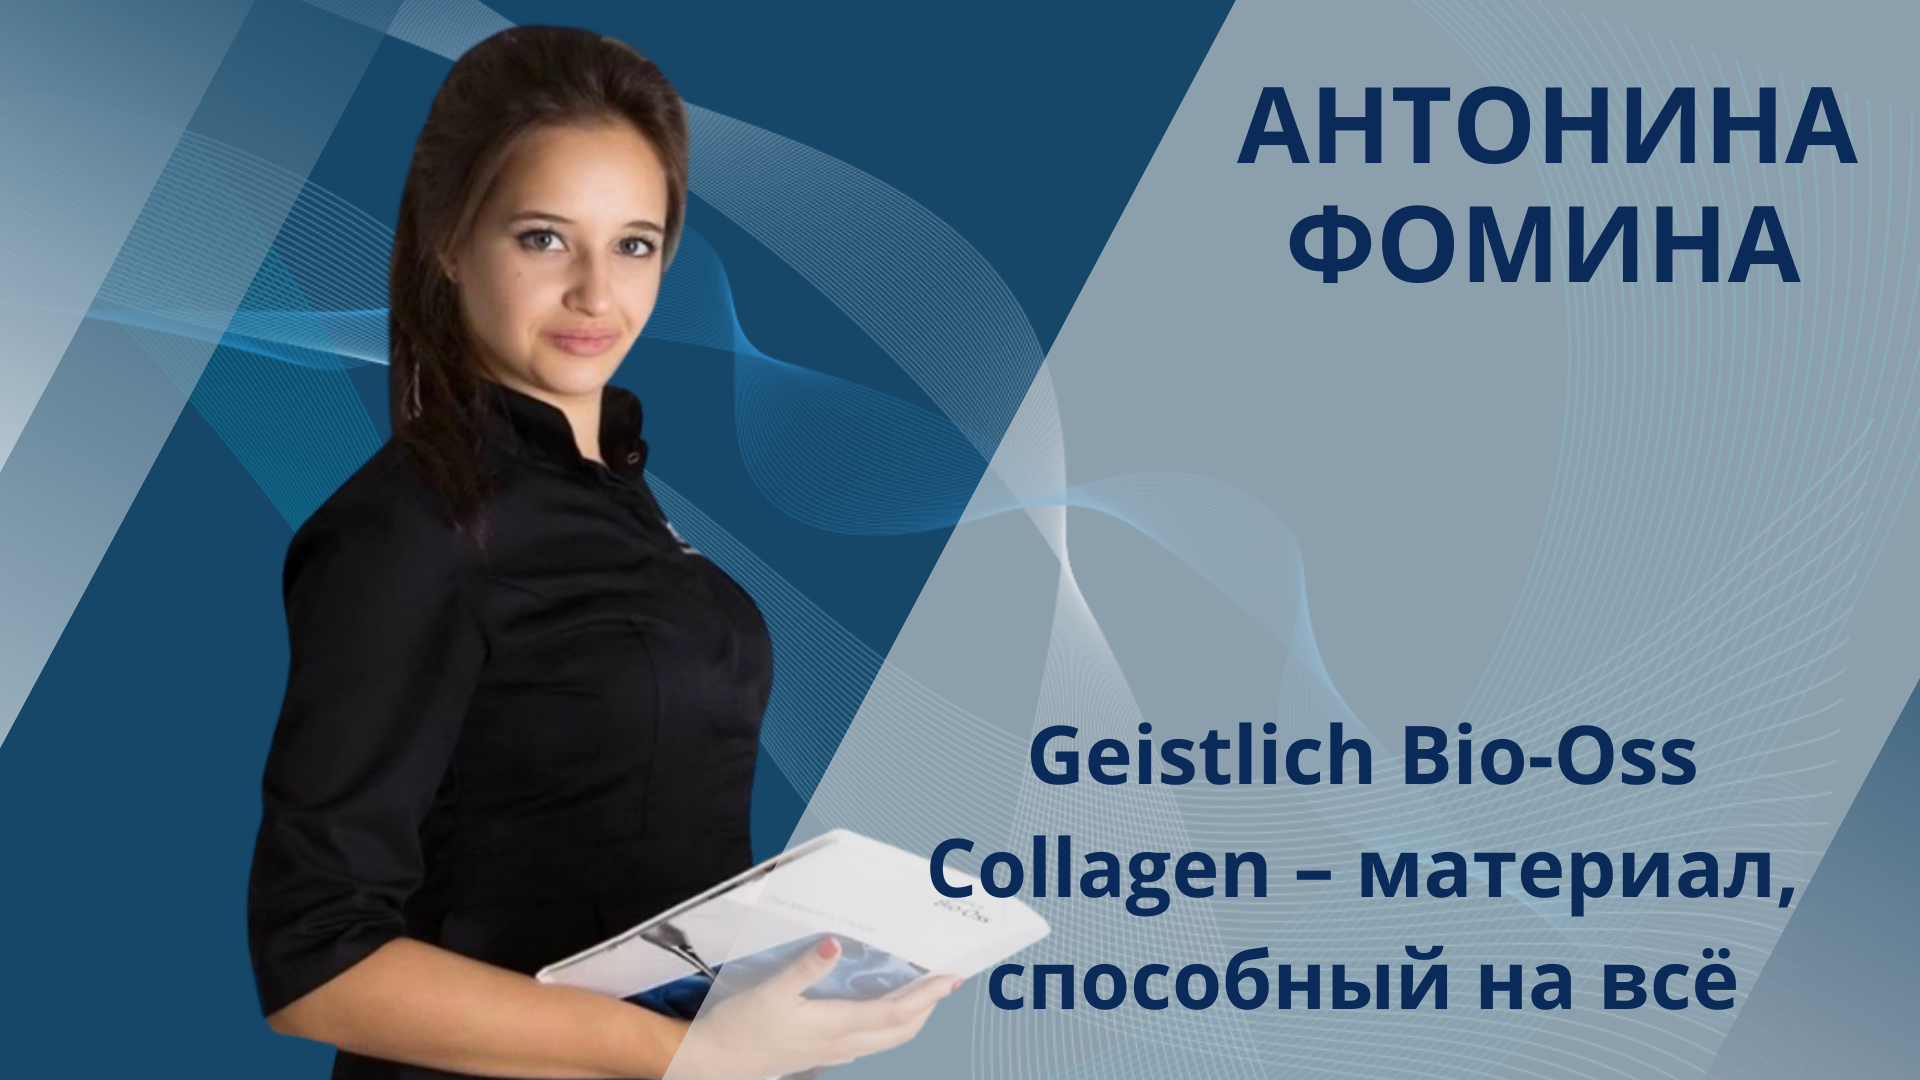 Антонина Фомина. Geistlich Bio-Oss Collagen – материал, способный на всё 